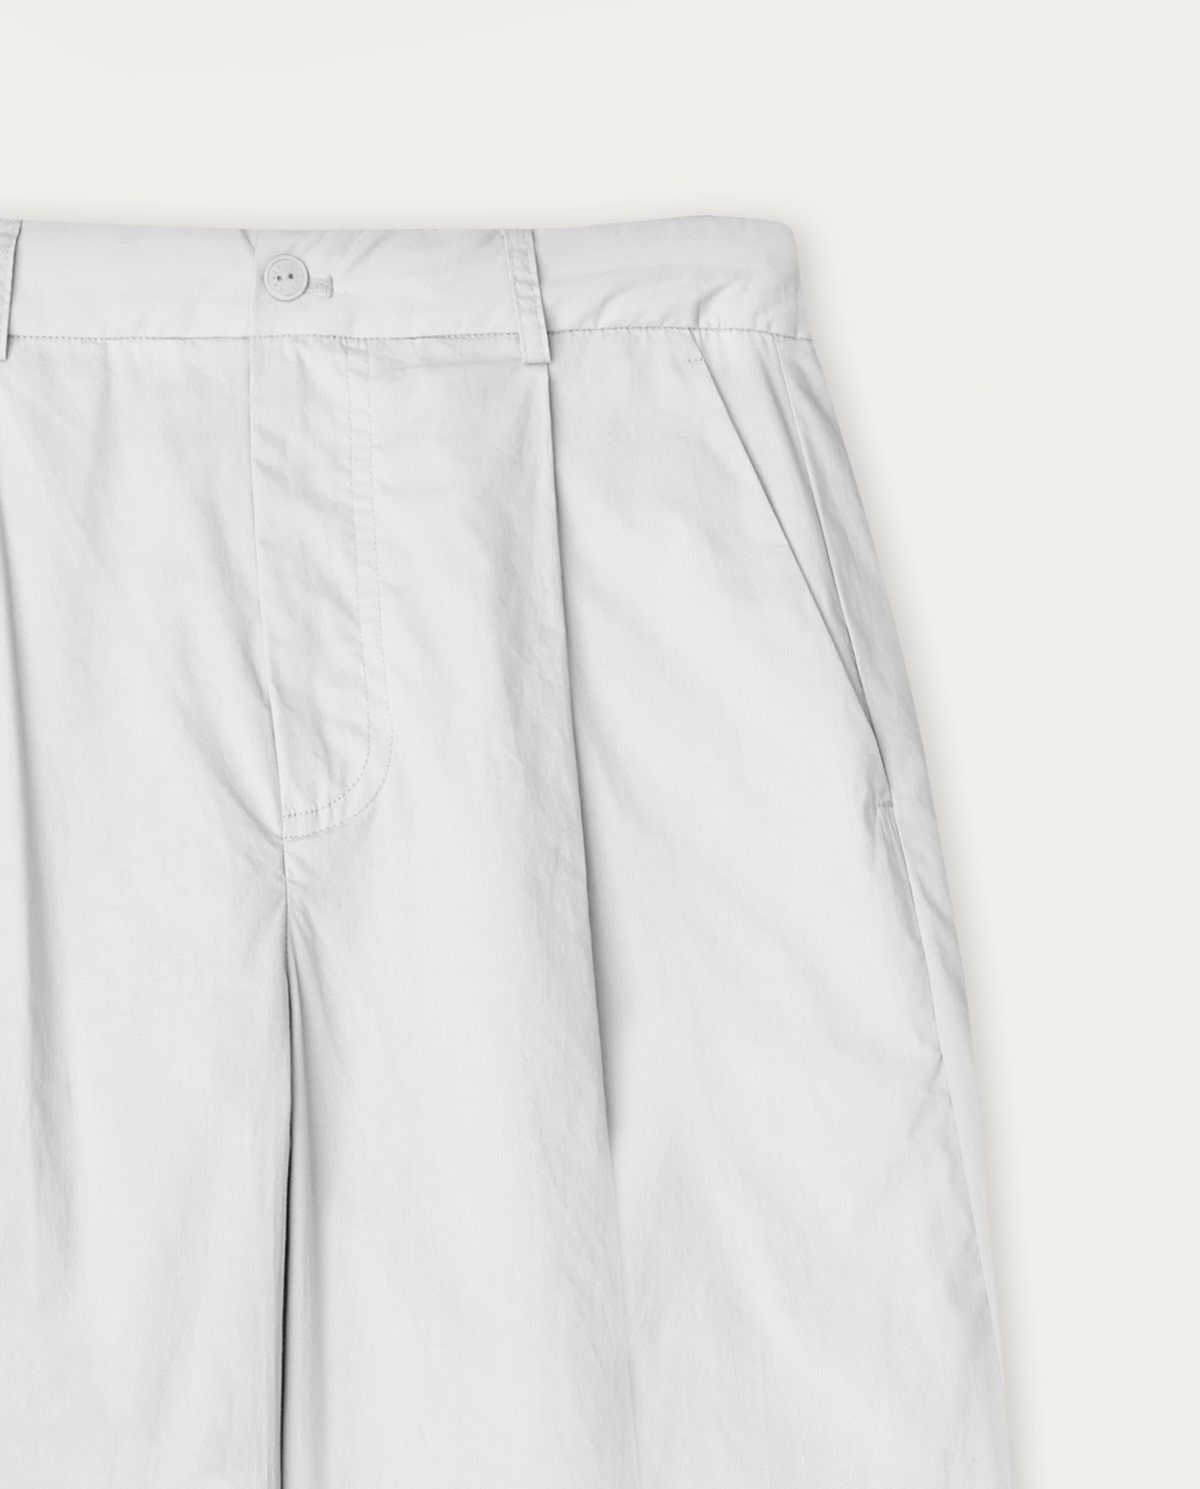 Pantalons cotó wide leg Blanc 1